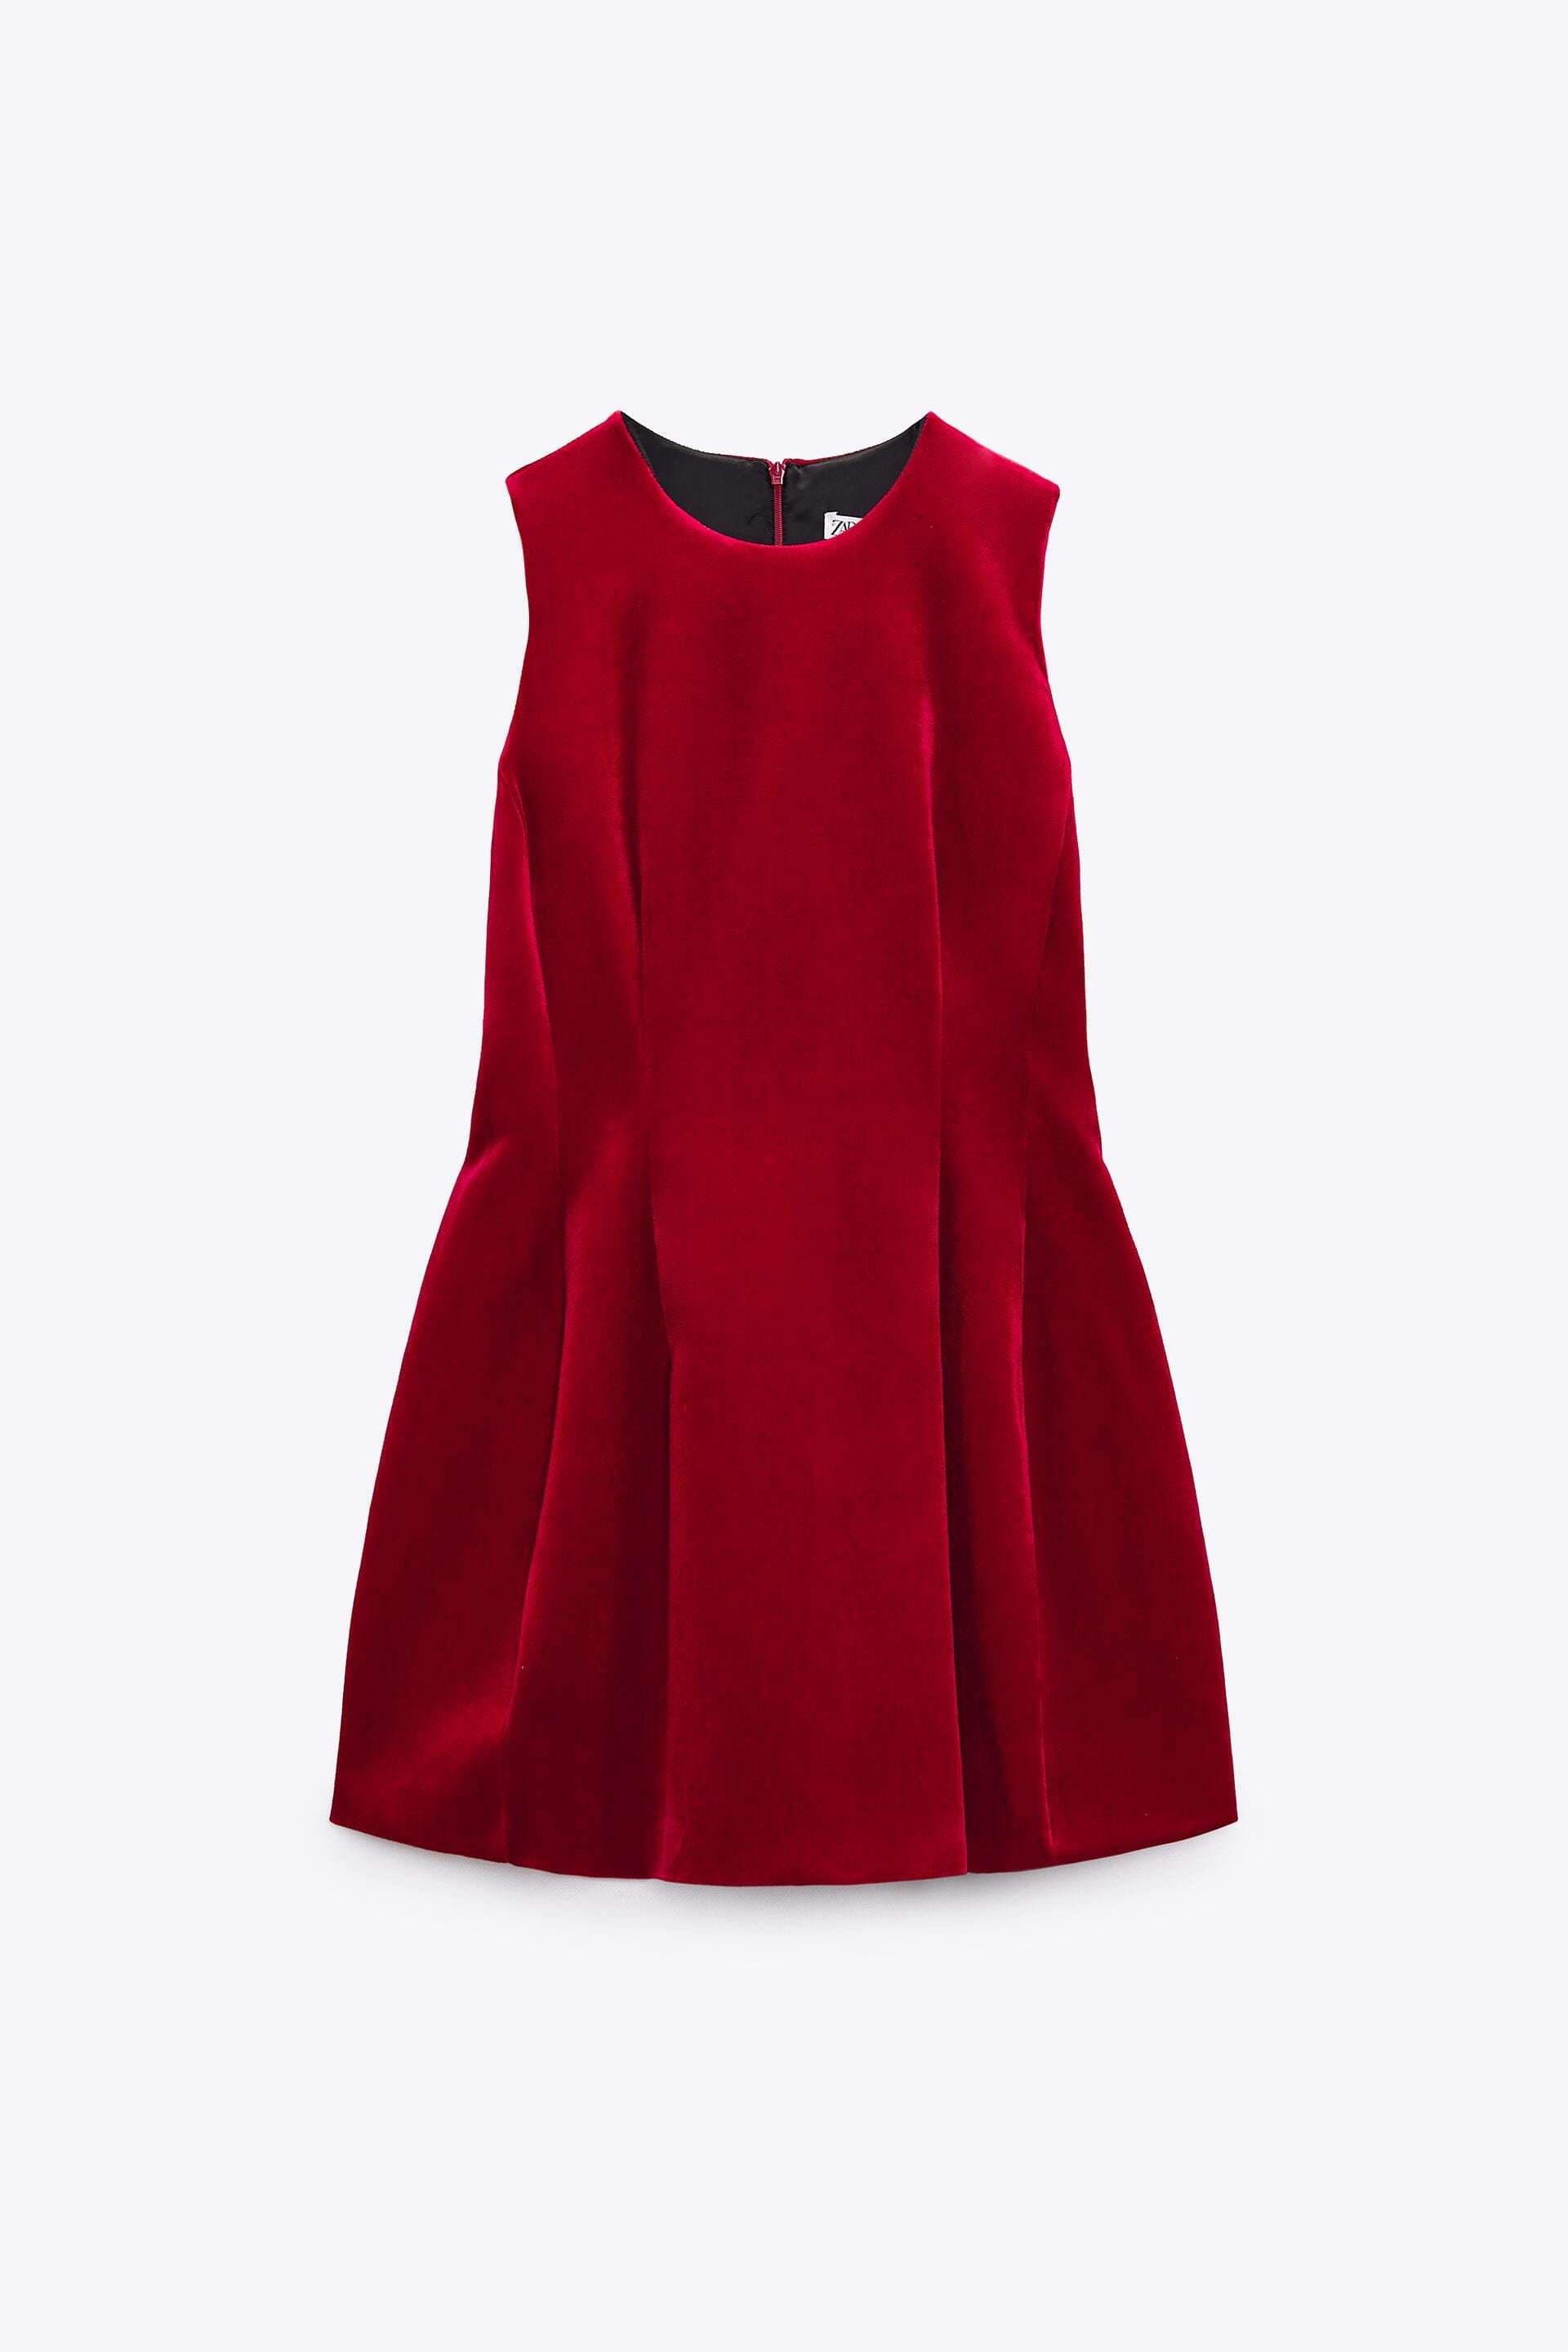 ALT: 10 vestidos de fiesta cortos de Navidad de Zara, Massimo Dutti y Sfera a buen precio